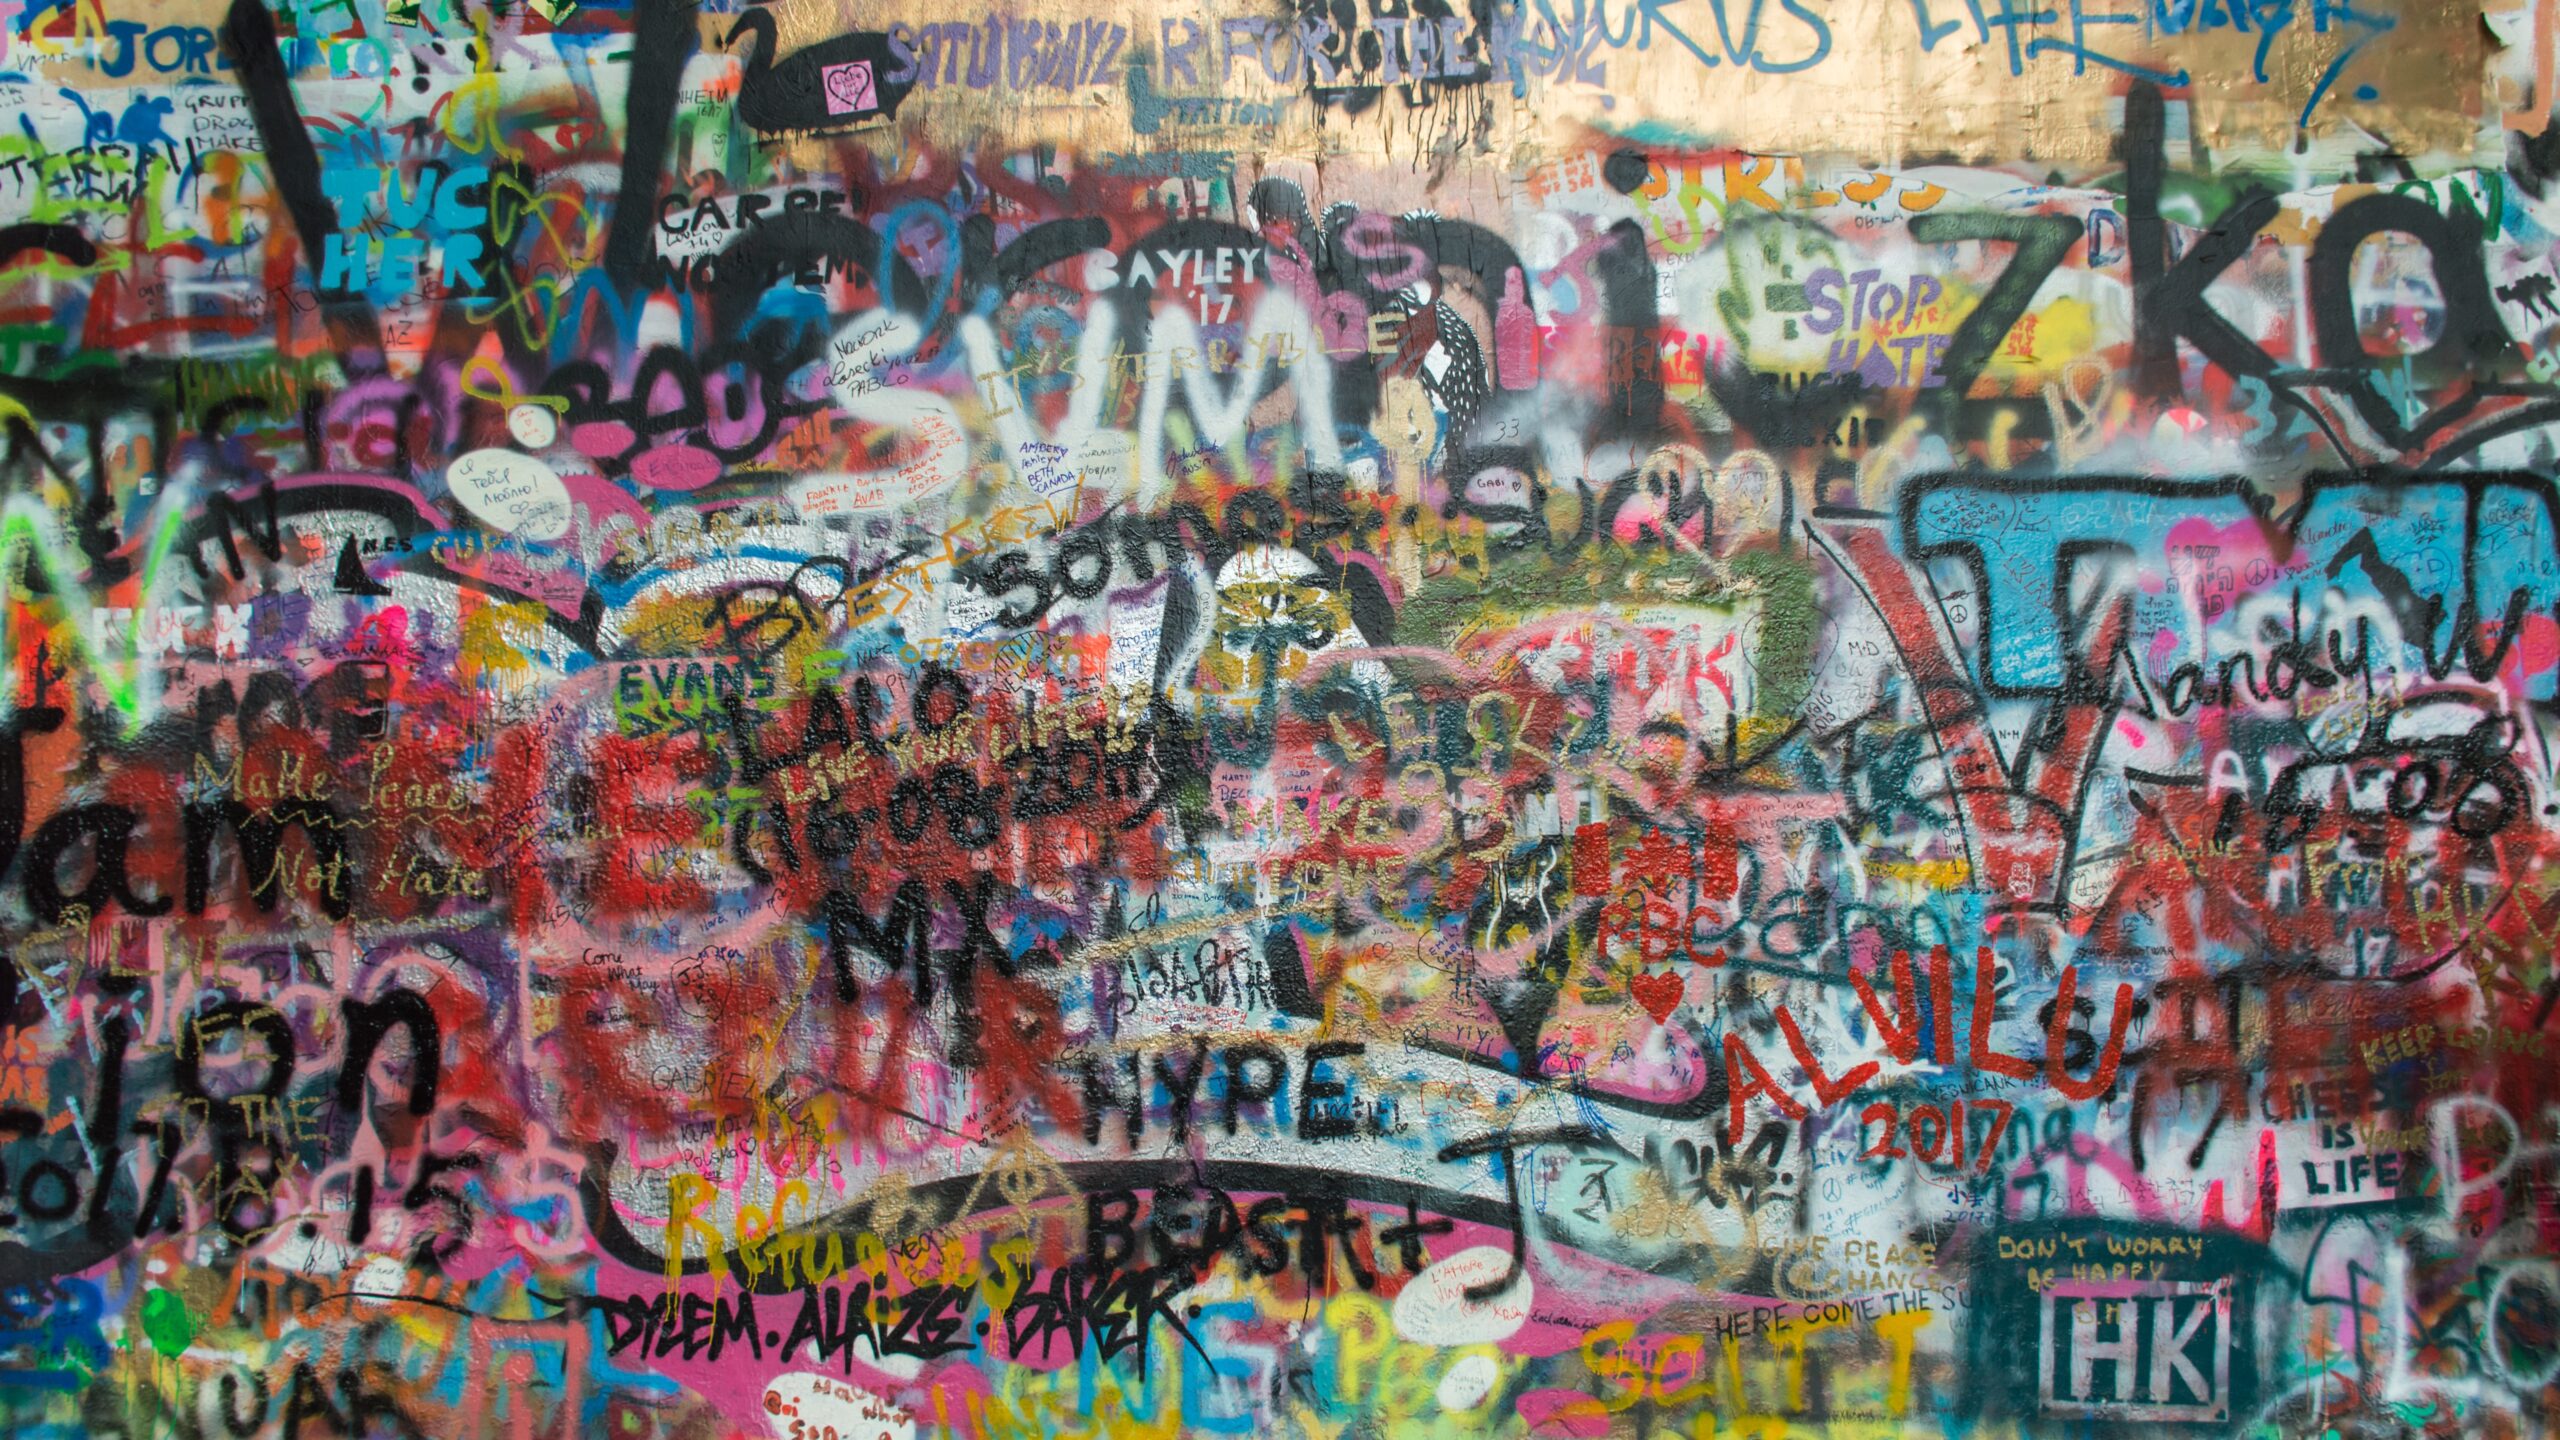 Graffiti on a wall